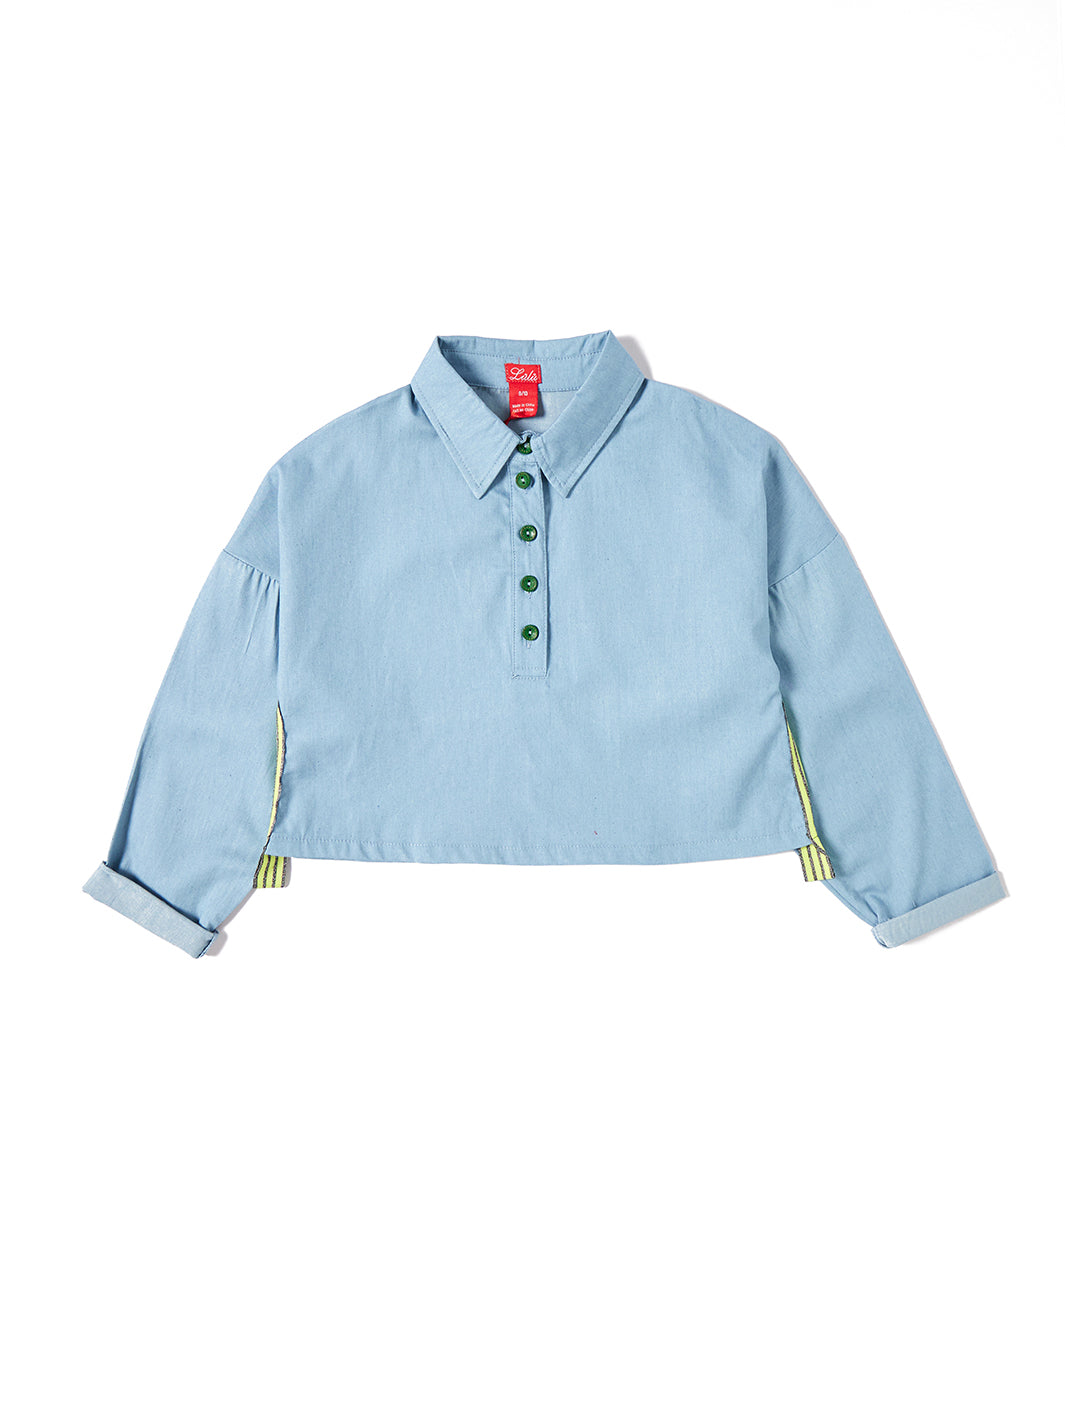 Denim Crop Length Shirt - Lt. Blue